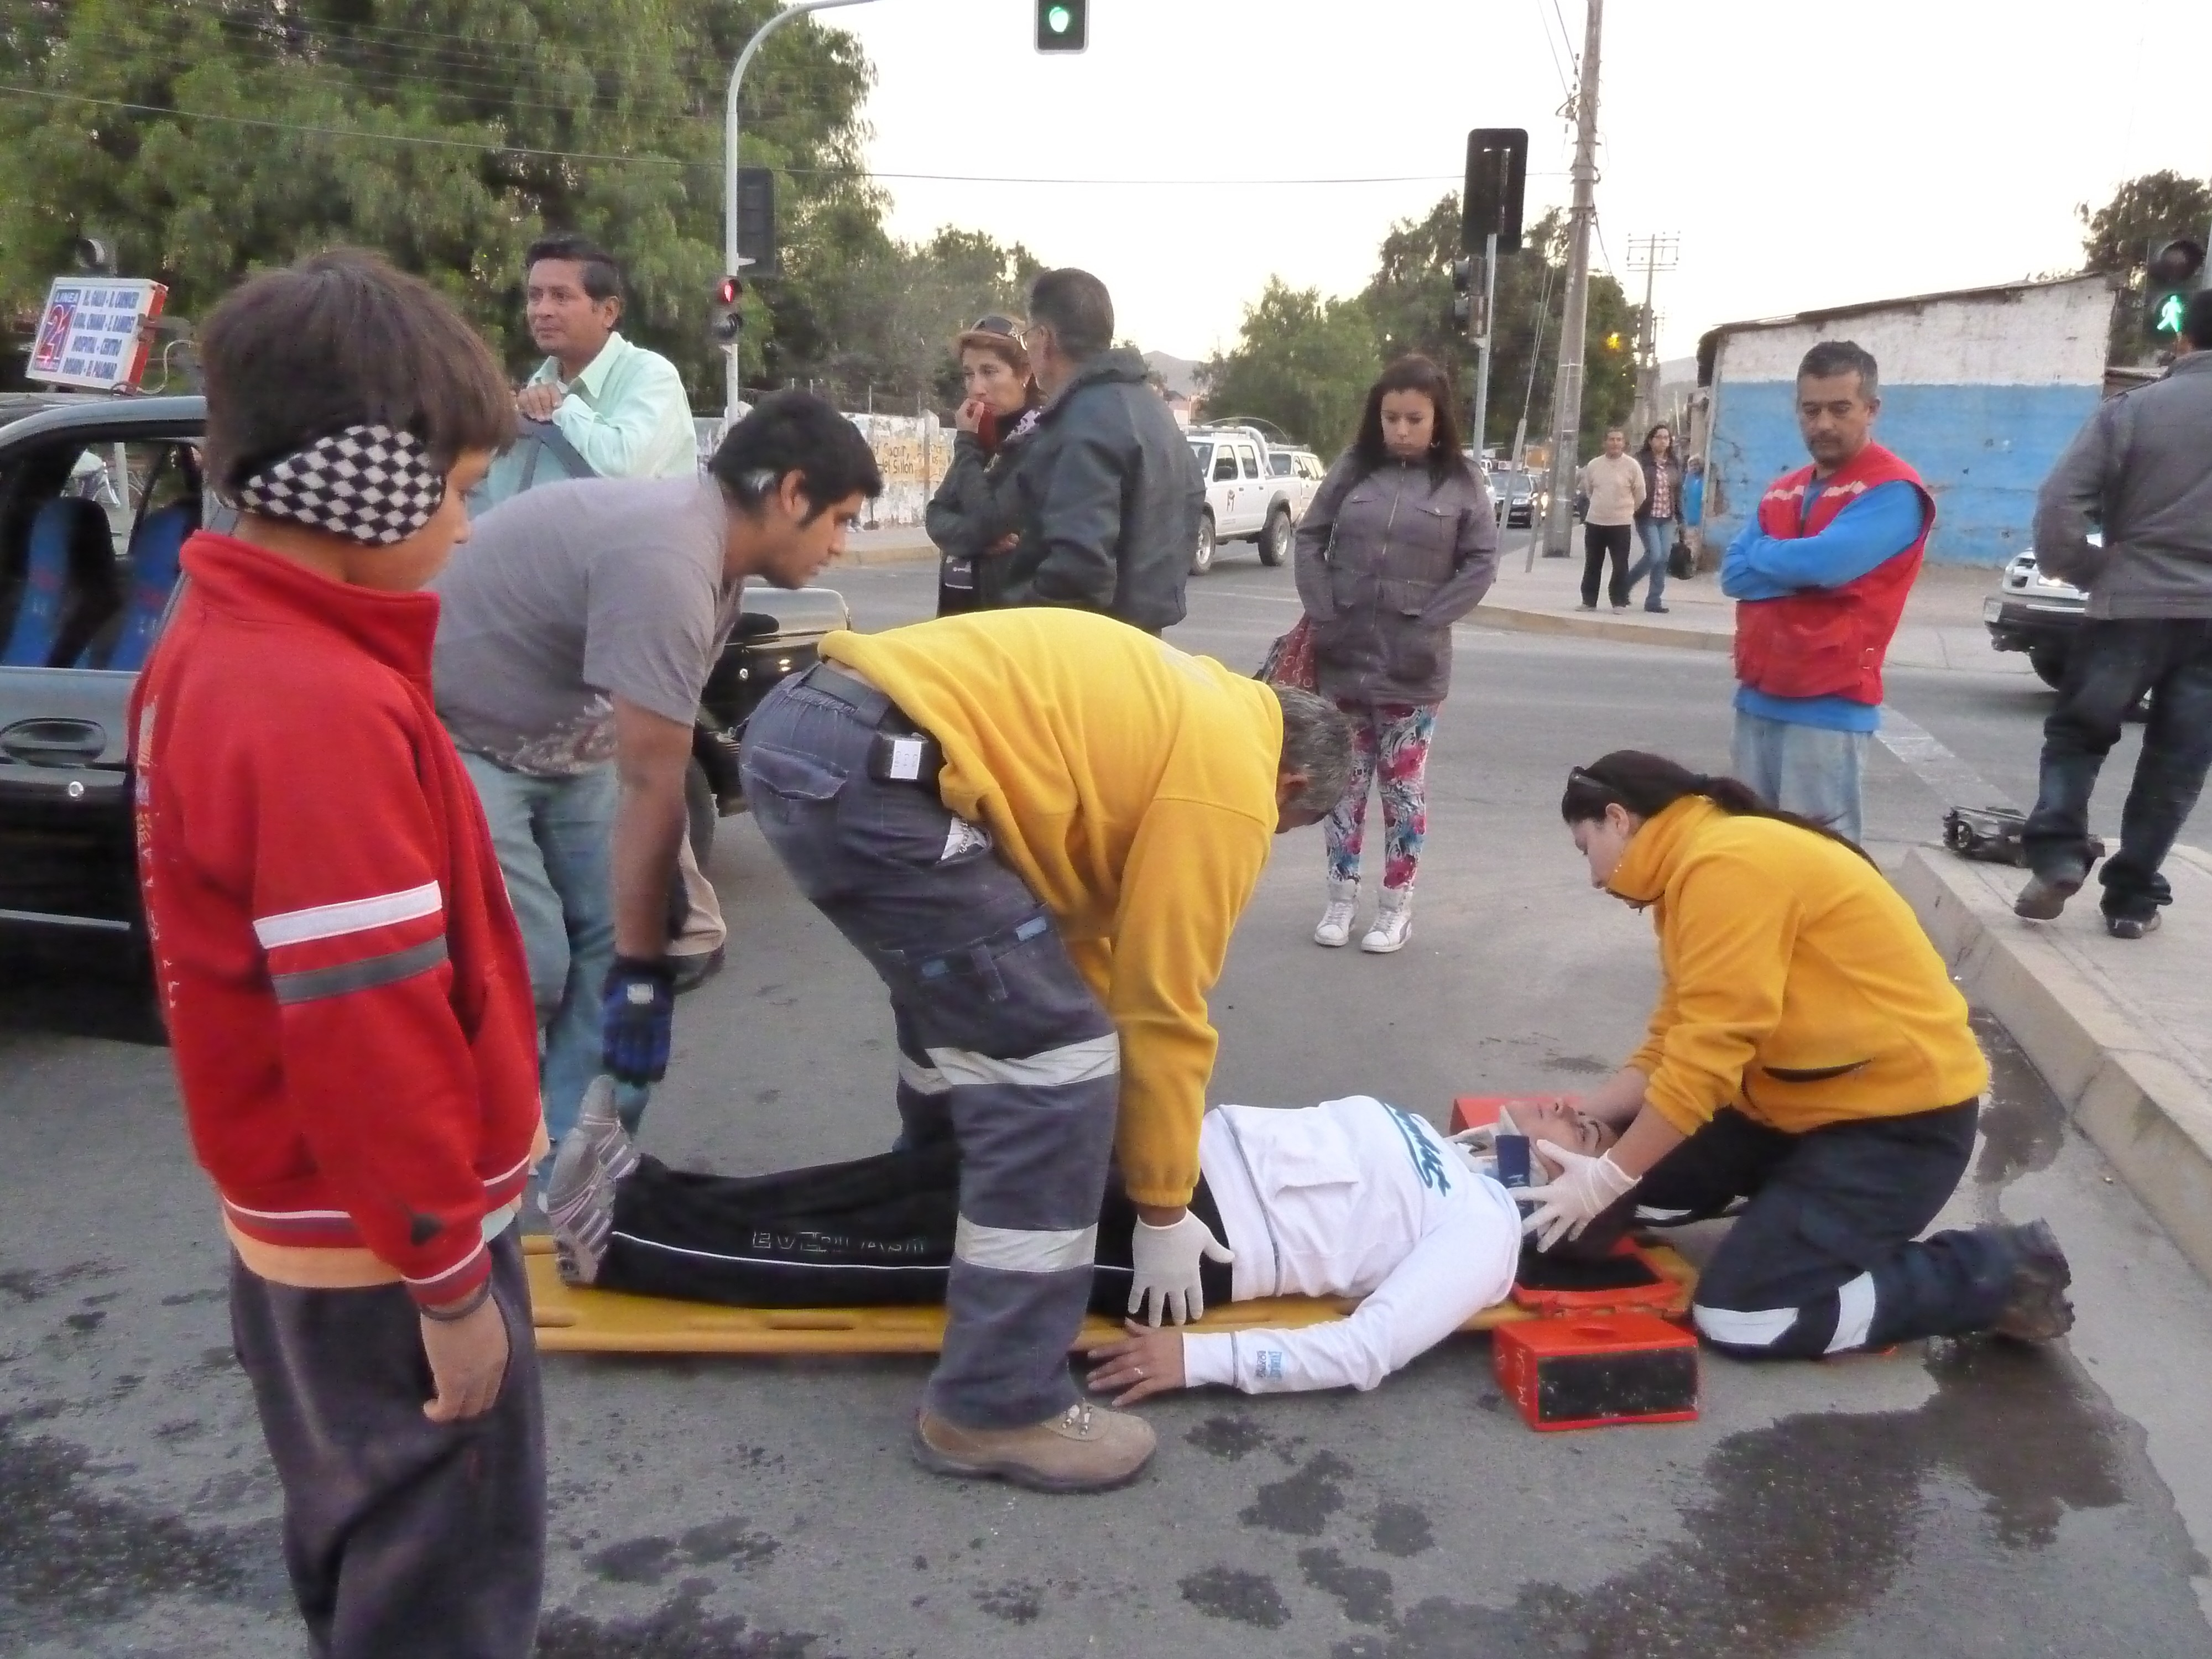 Siete Personas Quedaron Lesionadas Tras Un Accidente De Tránsito En Copiapó 6102